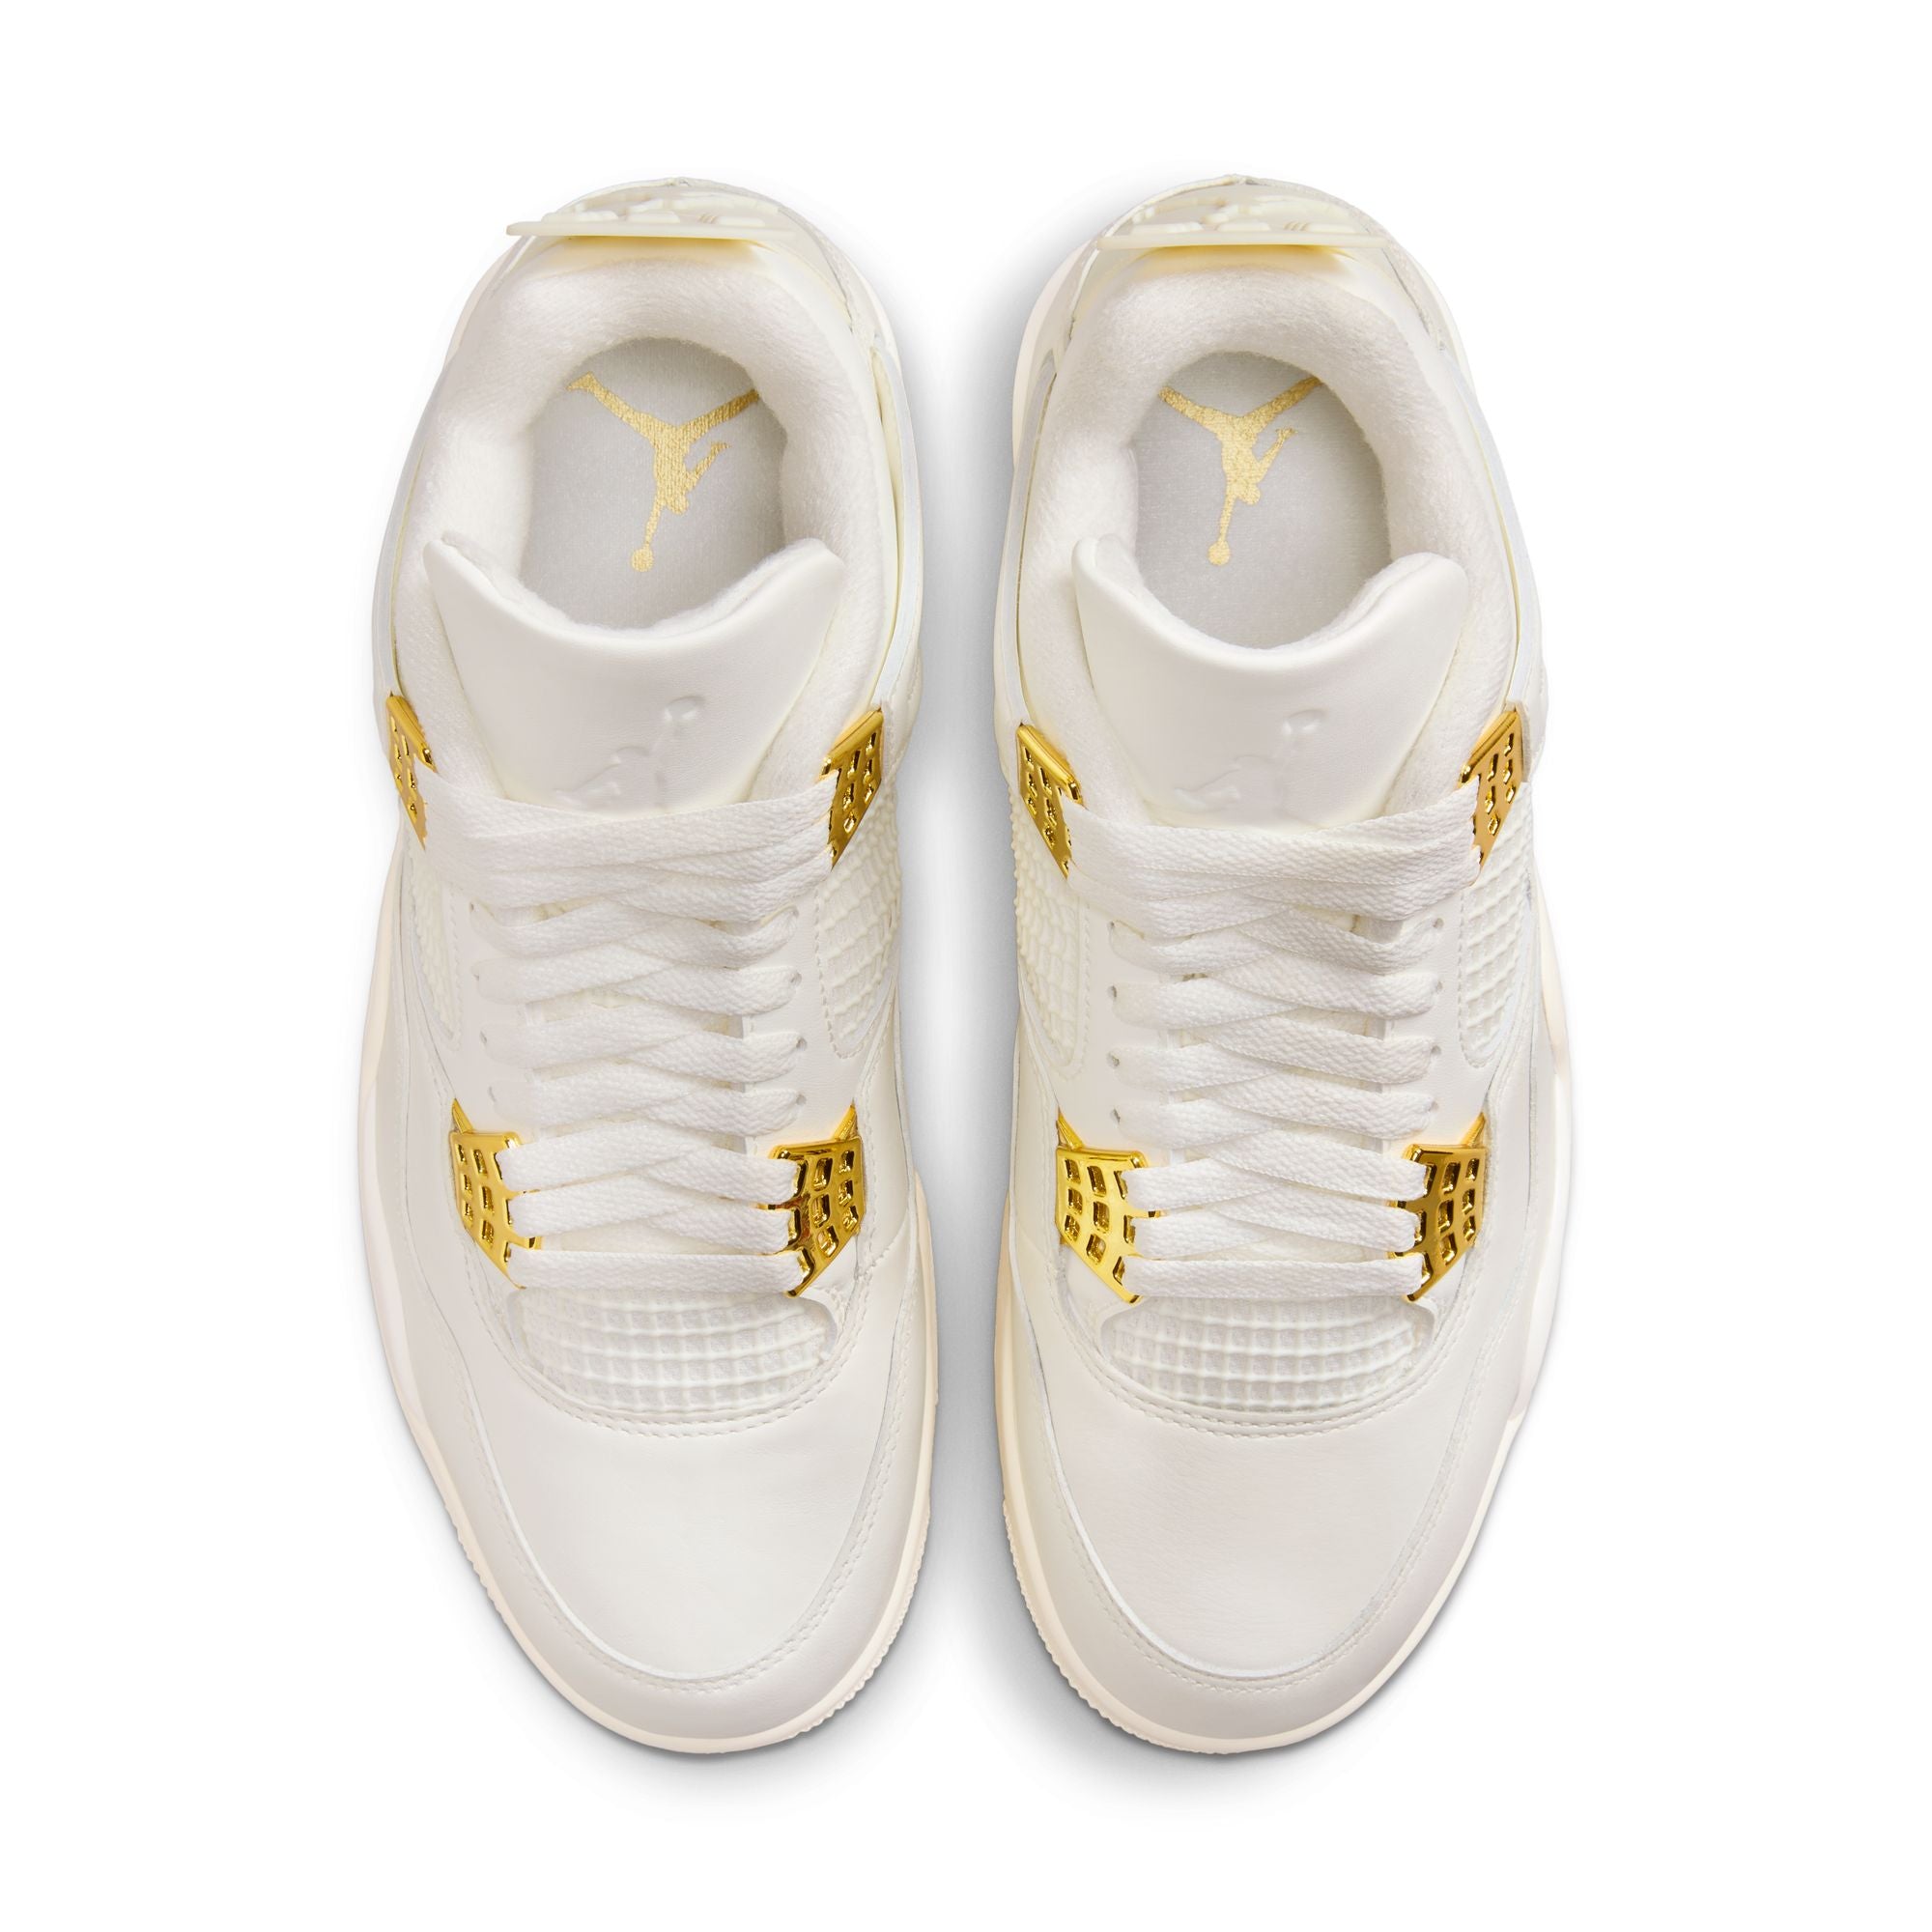 Womens Air Jordan 4 Retro 'White/Gold'